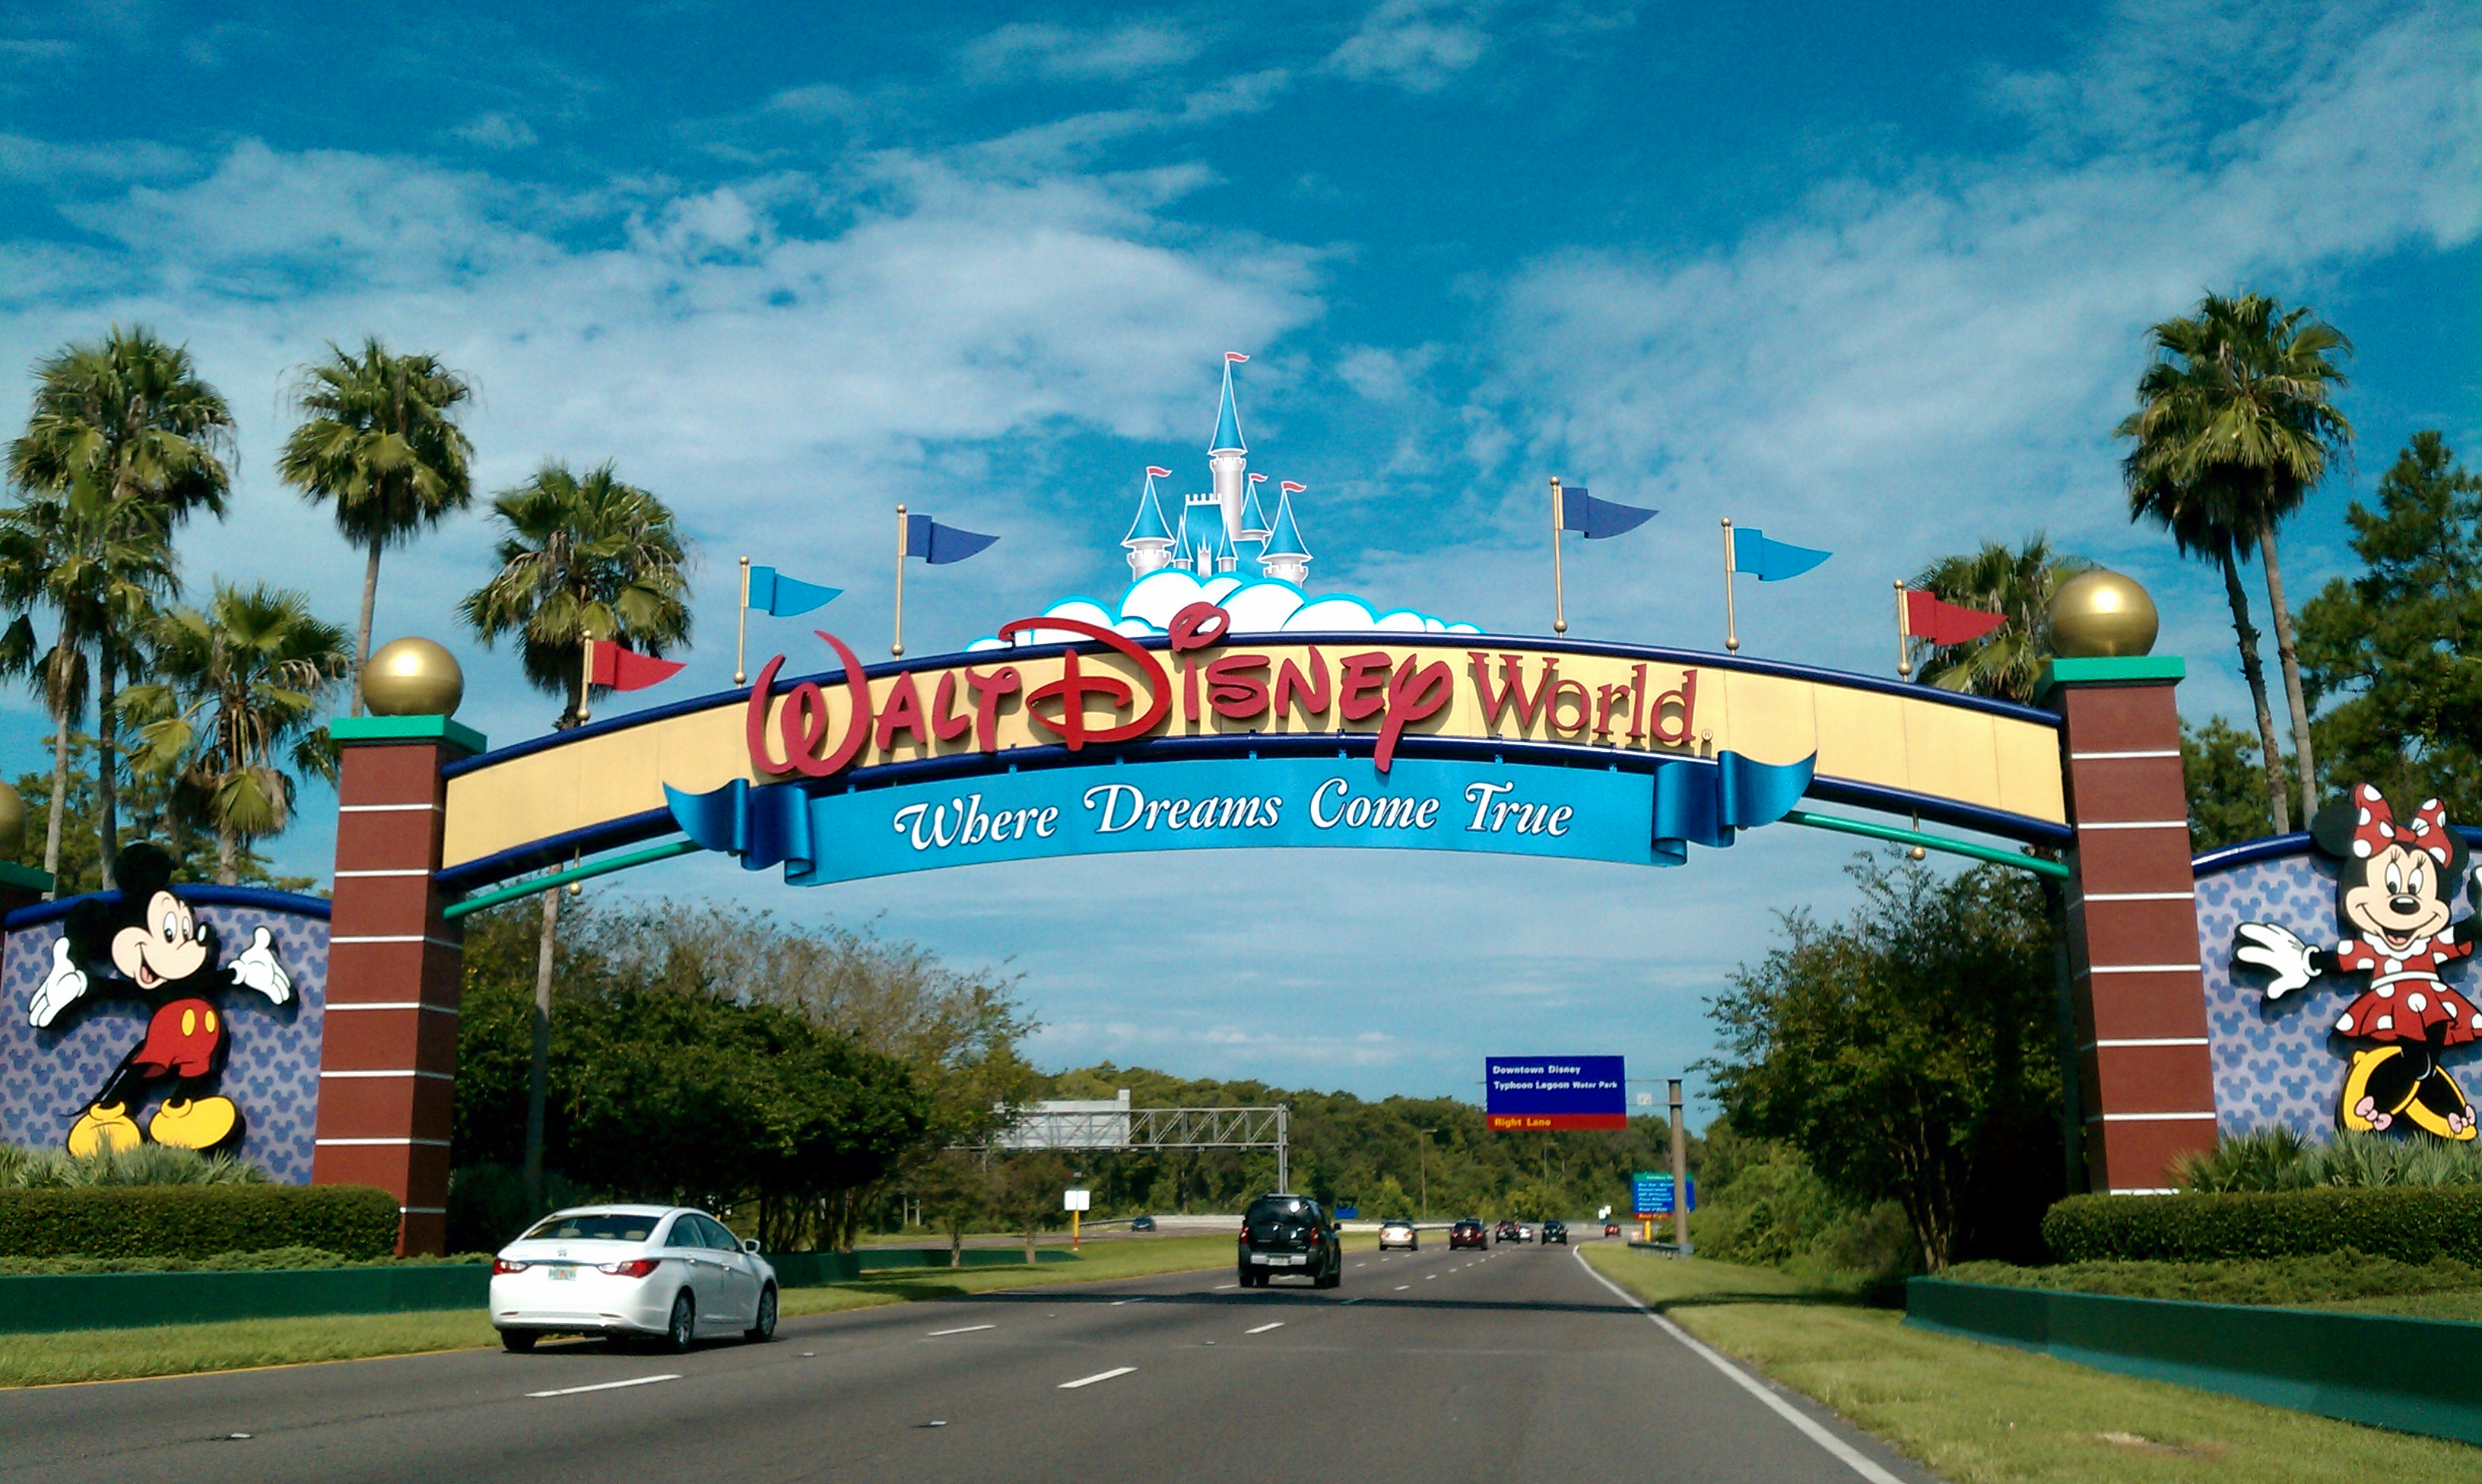 Walt Disney World acepta reservas en sus hoteles a partir del 1 de julio